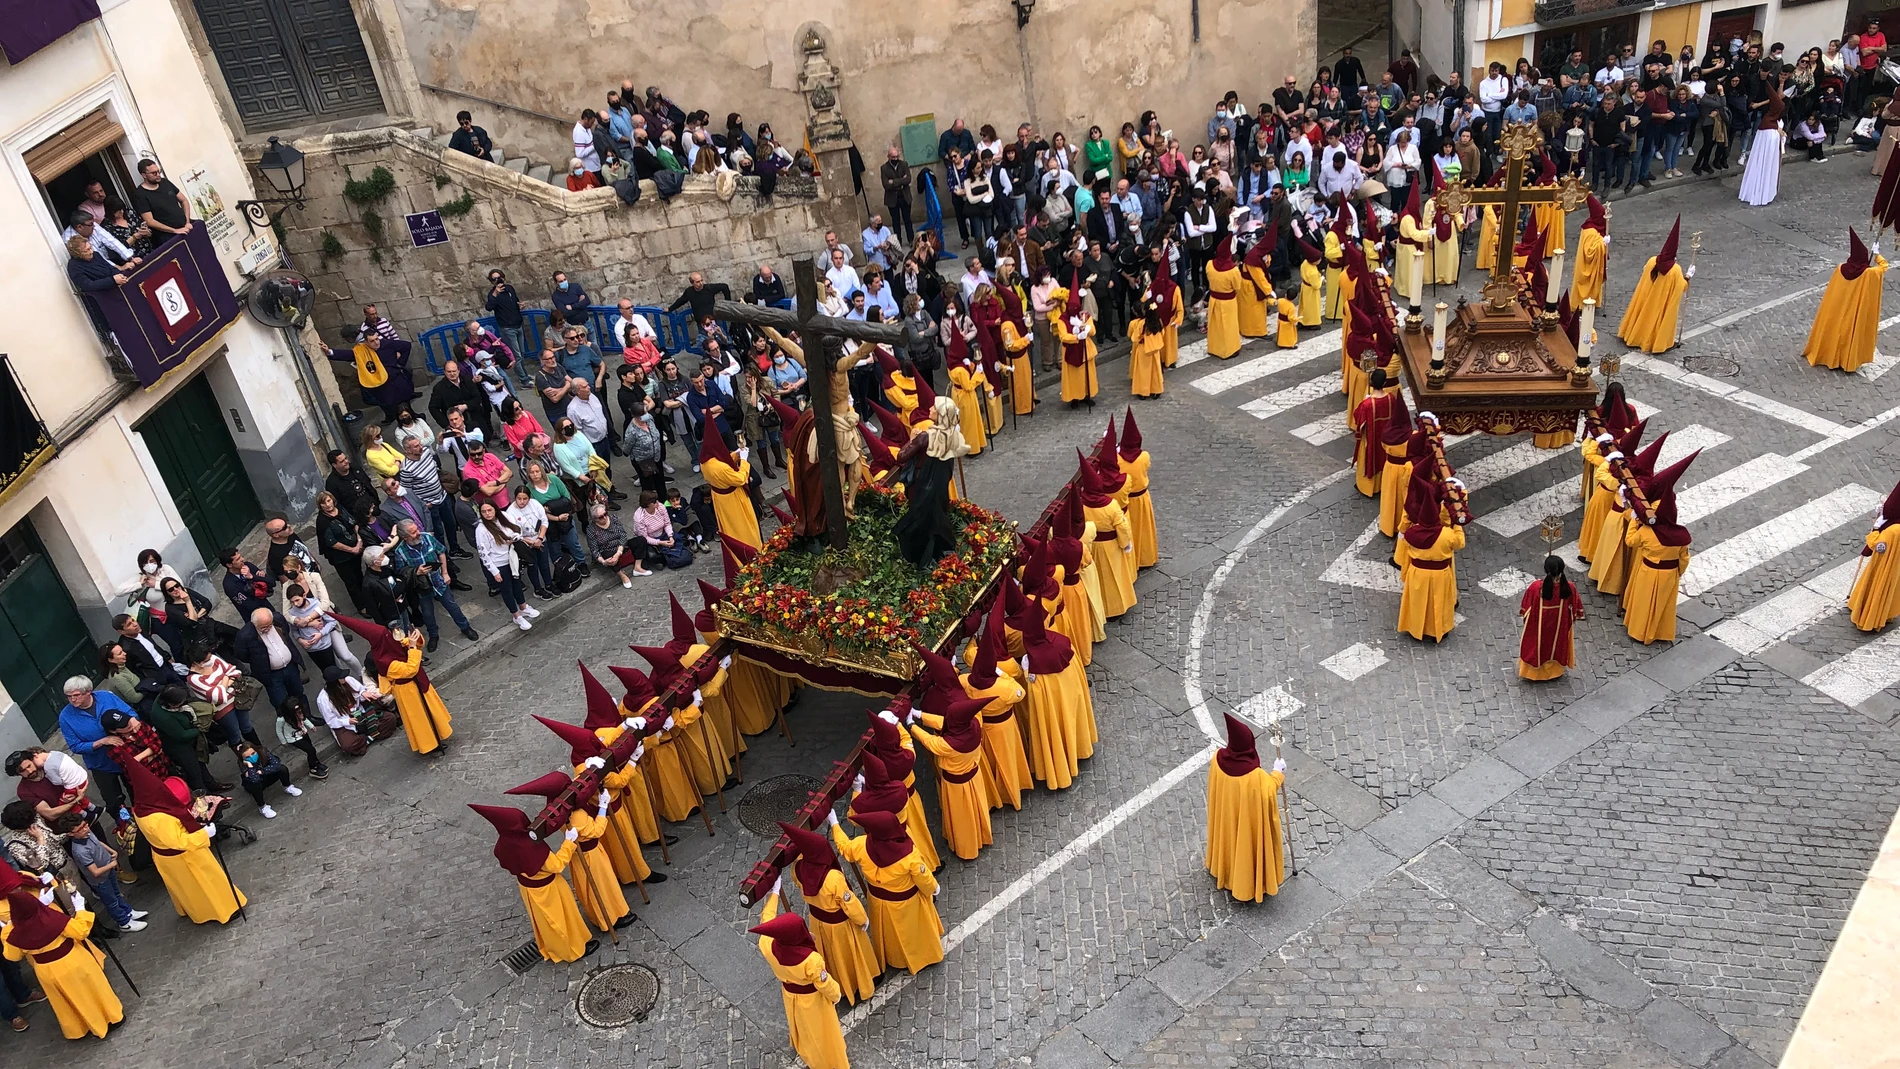 Esta Semana Santa apuntaros a Cuenca, cuando la ciudad se convierte en templos sin paredes